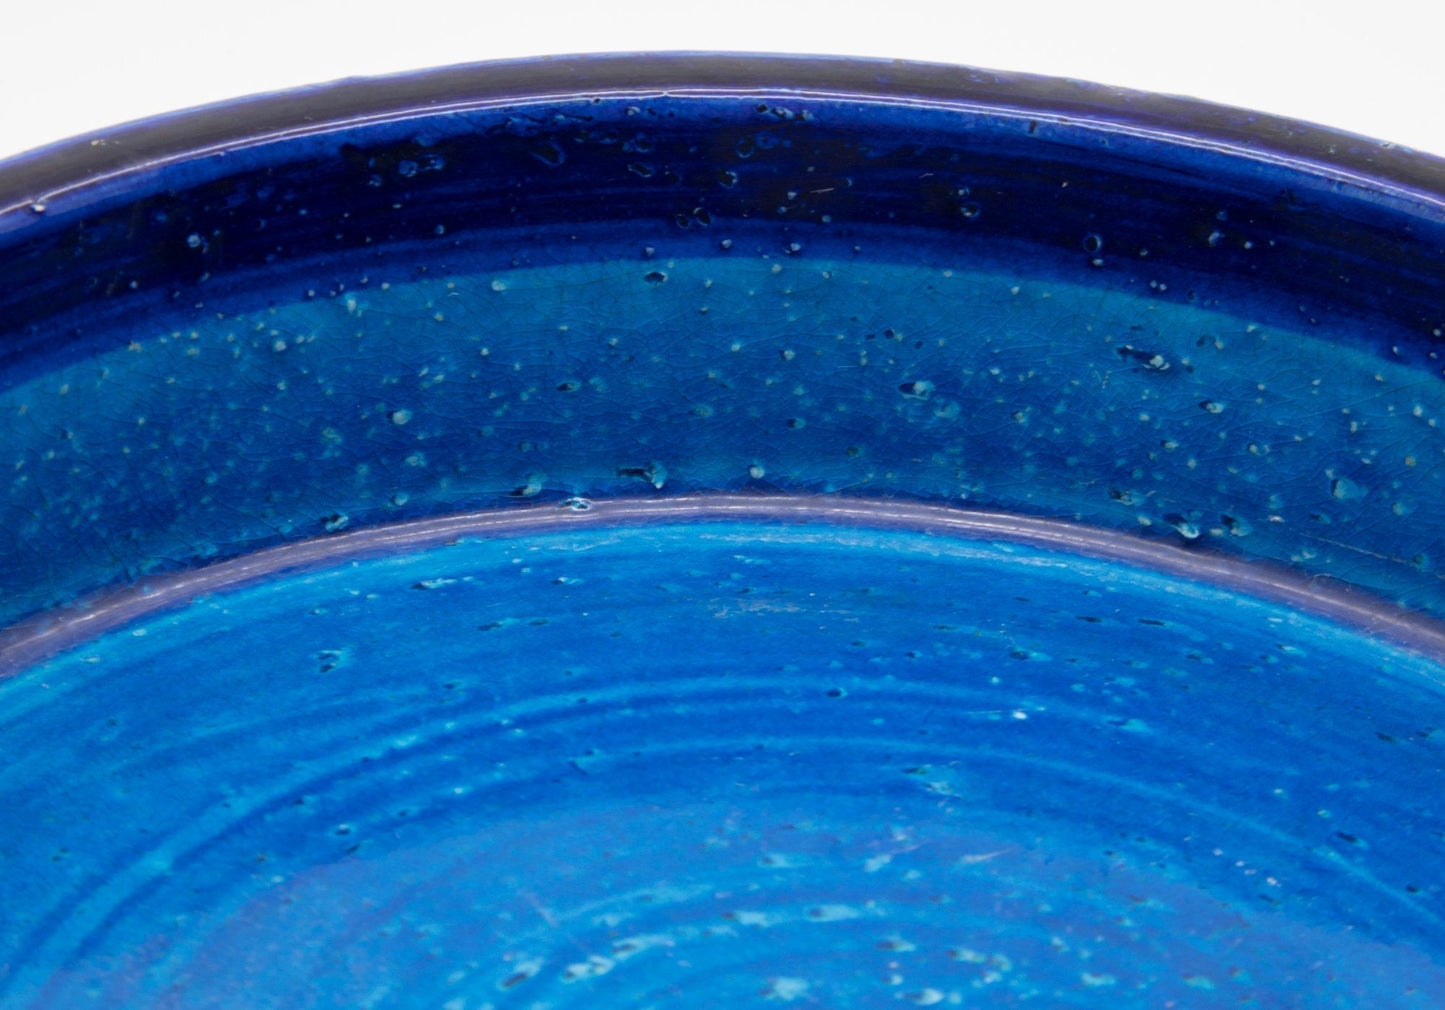 Bitossi ALDO LONDI Blue Ceramic Bowl Mollaris.com 